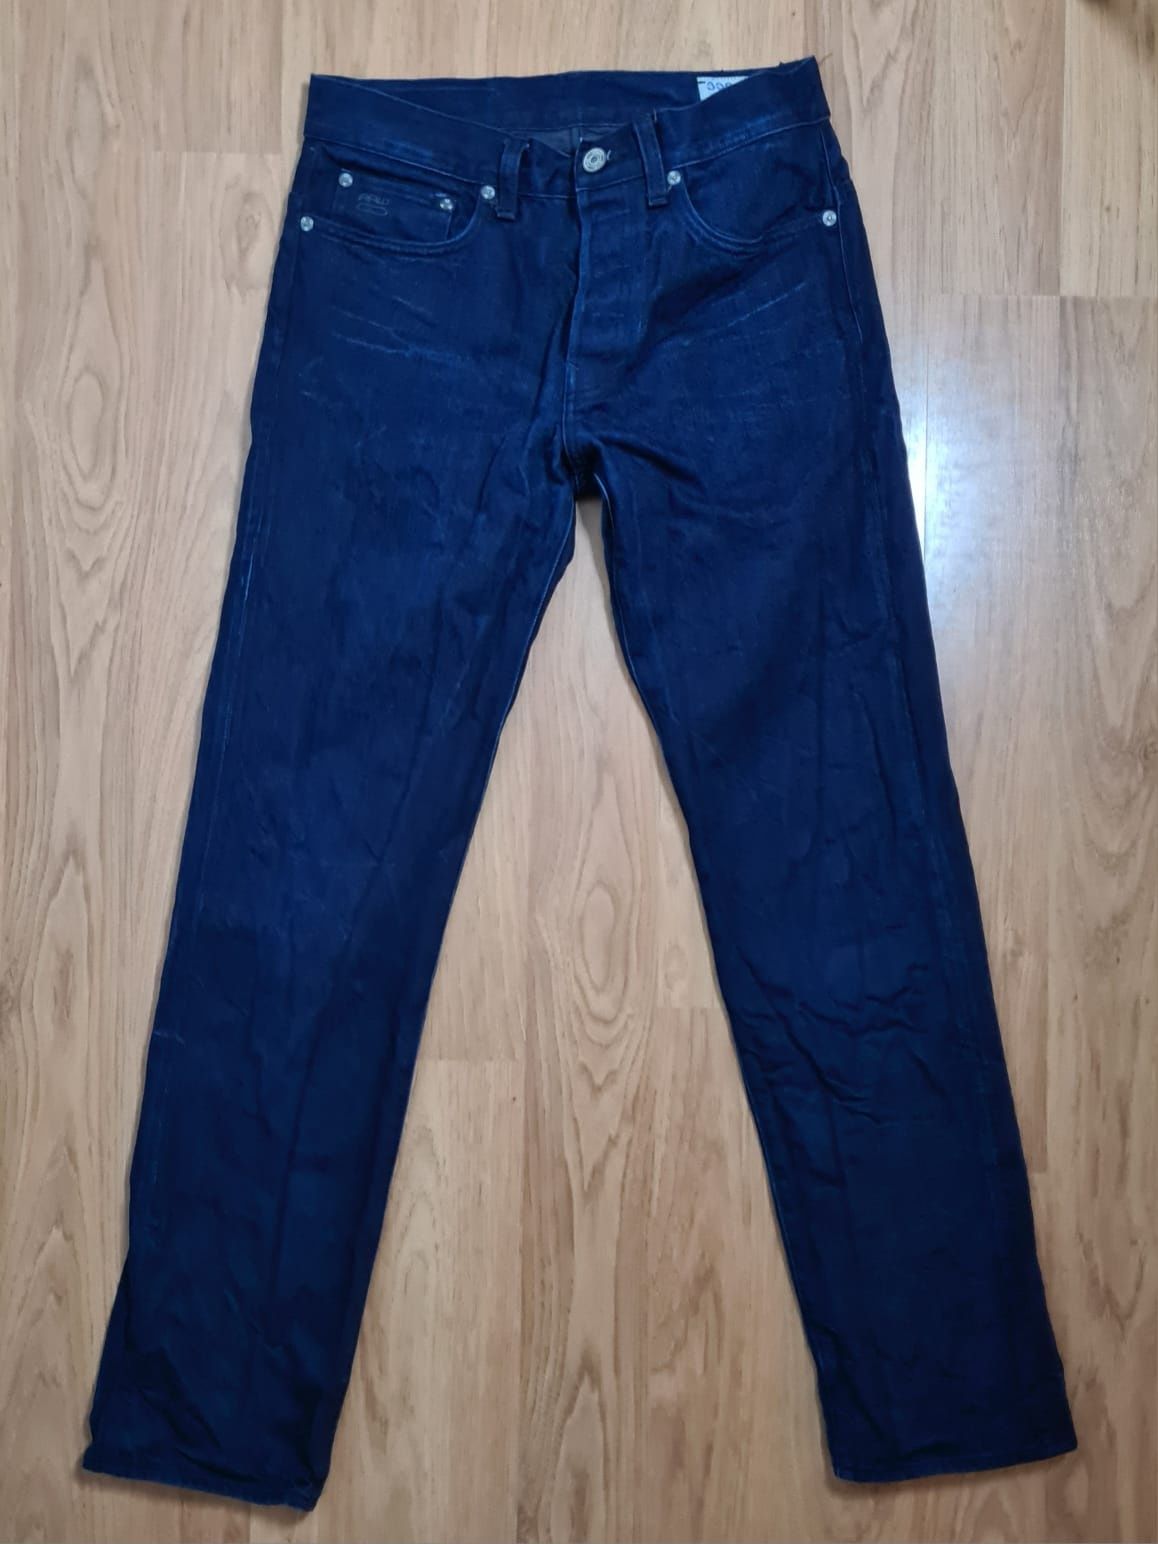 G-Star RAW męskie jeansy 29x32 3301 straight granatowe